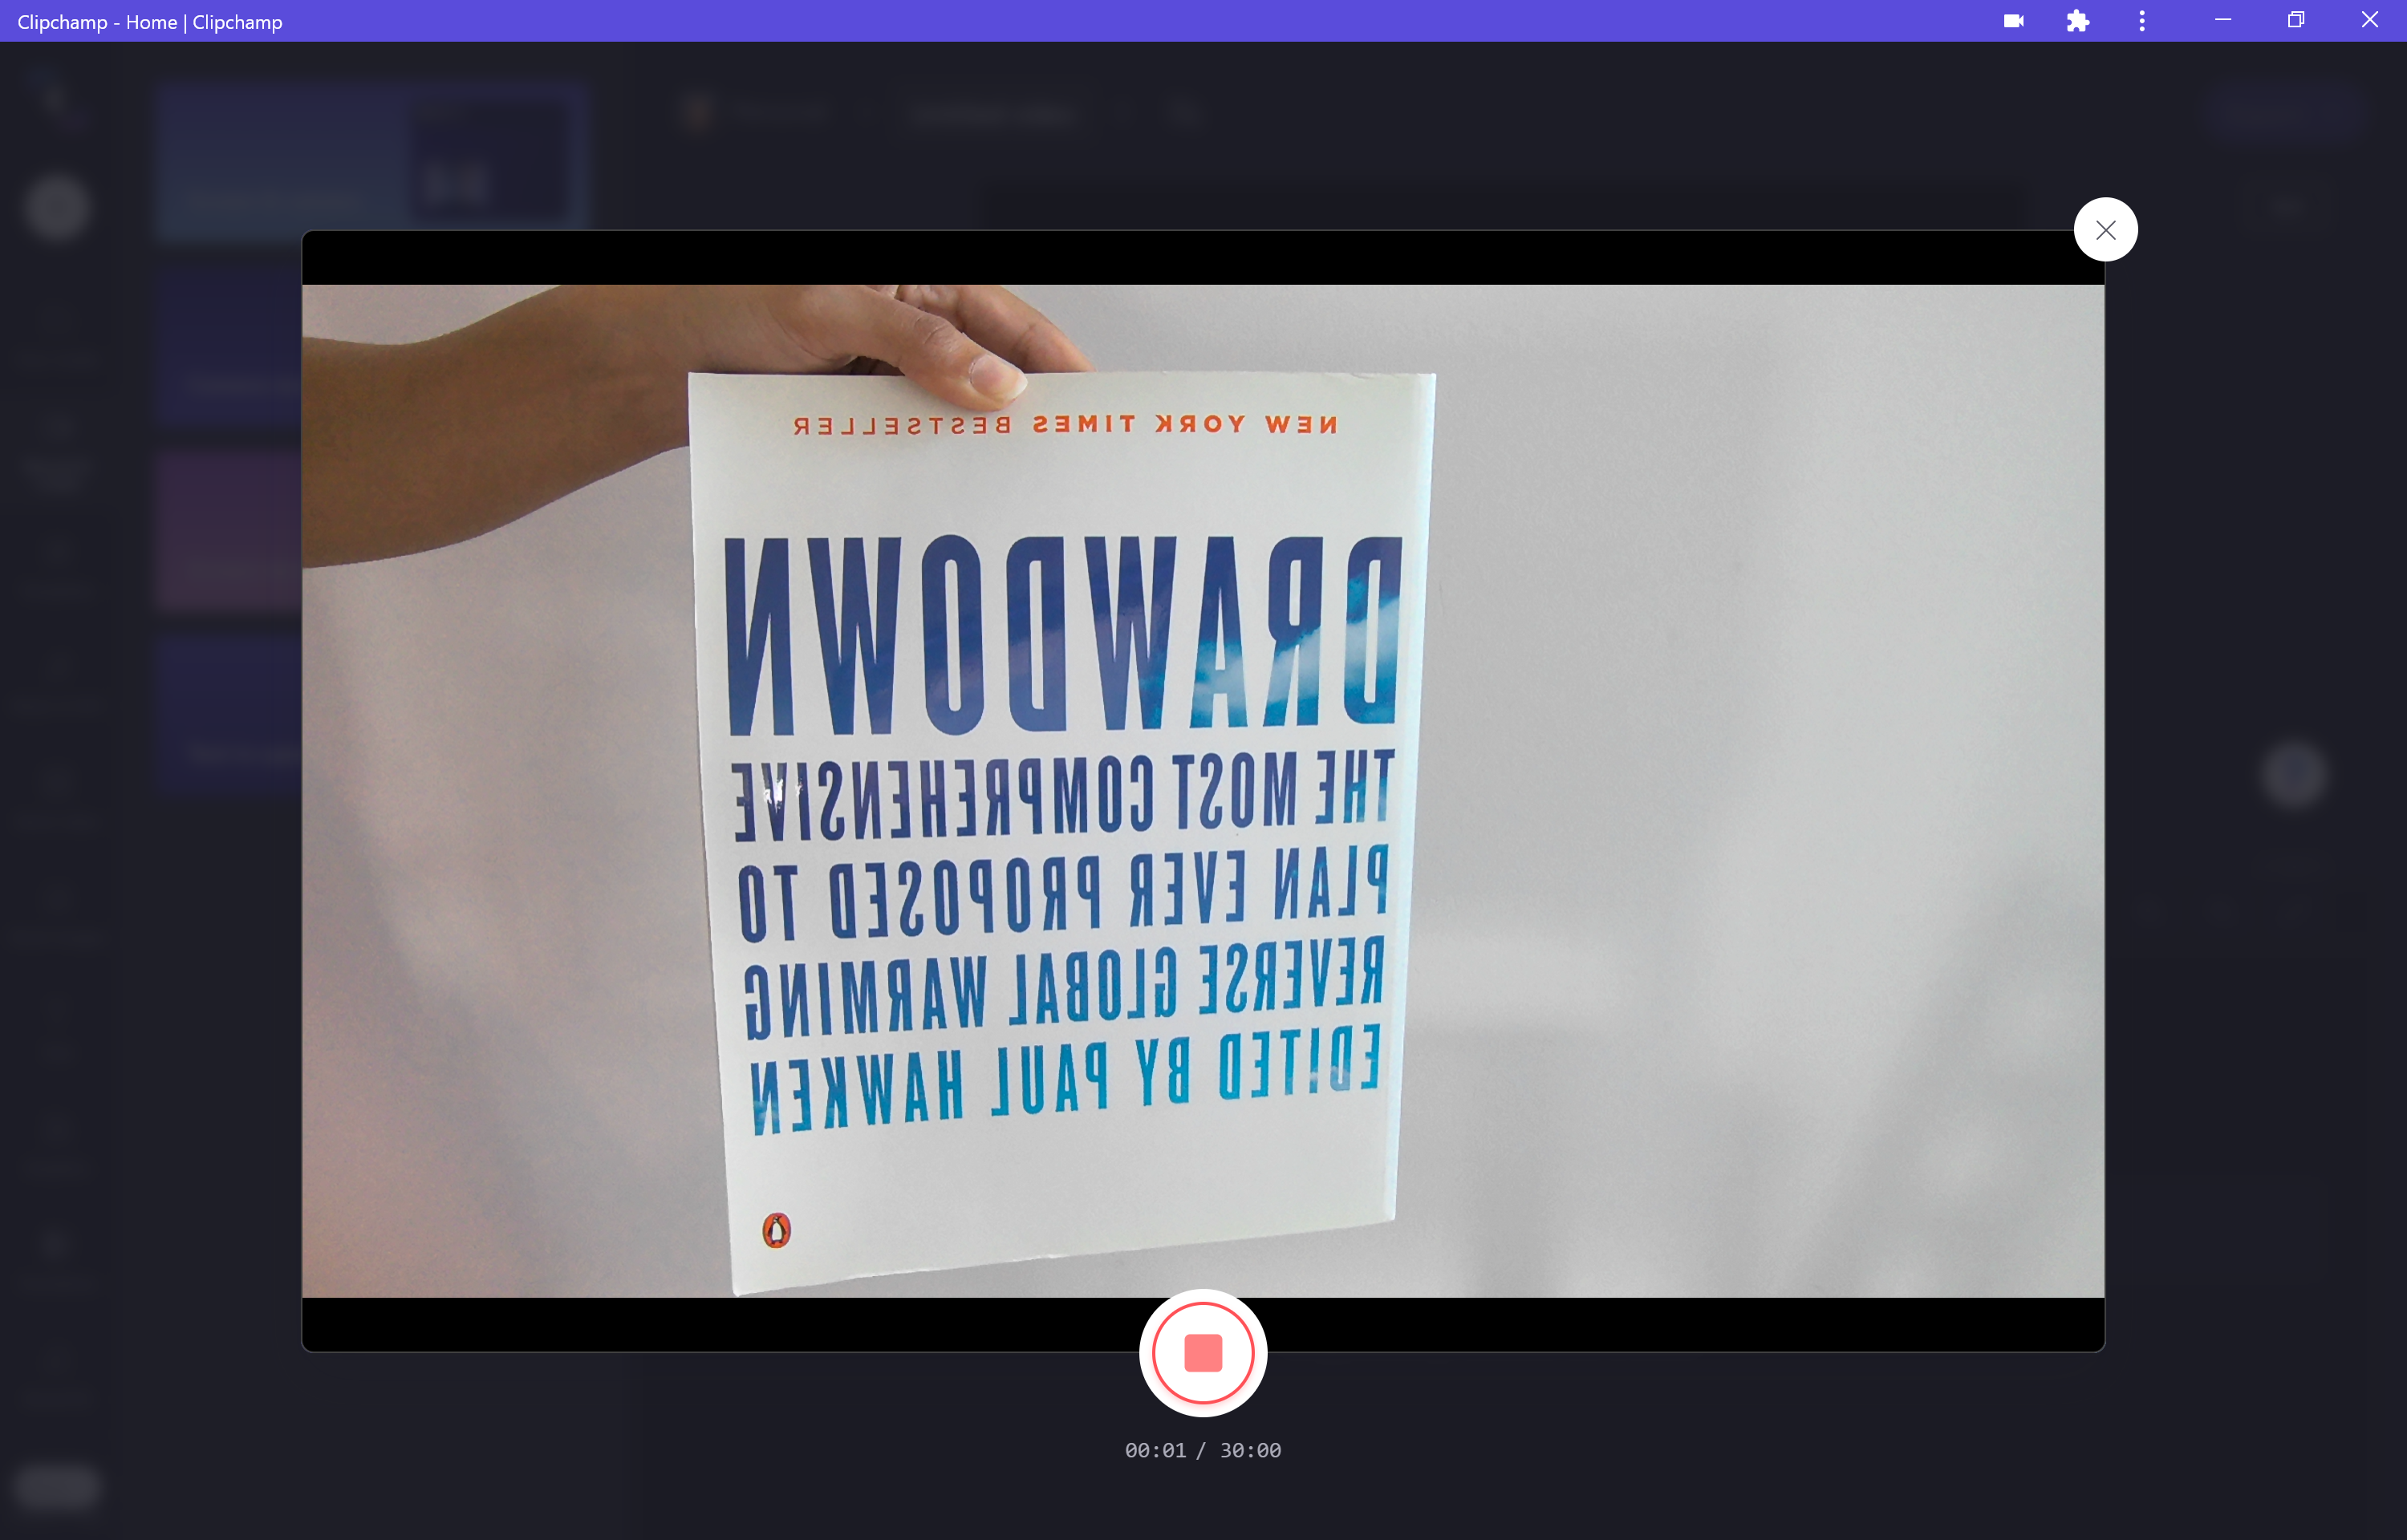 Immagine dell'anteprima del registratore della webcam Clipchamp che mostra il testo da destra a sinistra